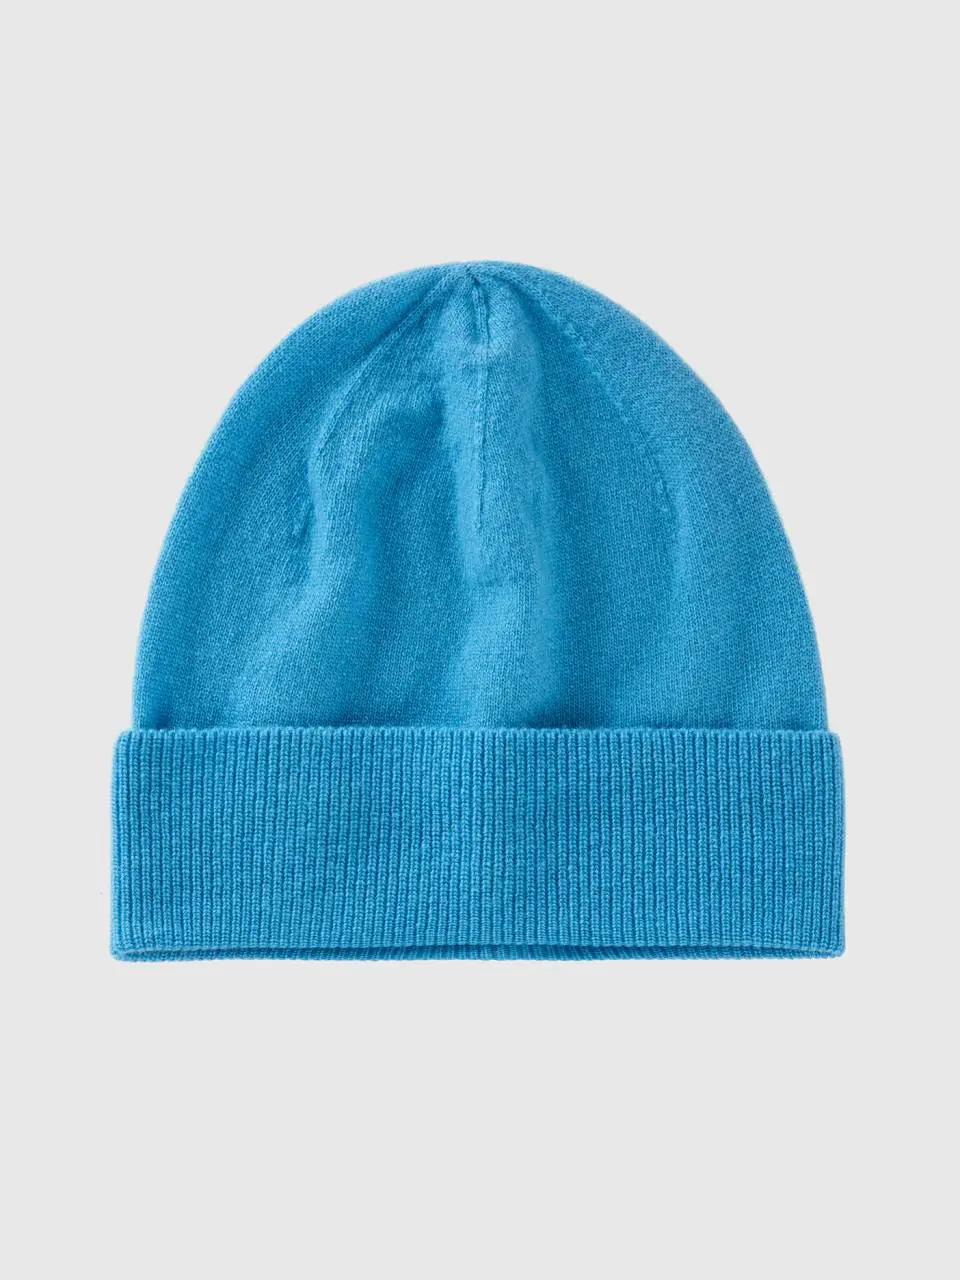 Benetton light blue hat in pure merino wool. 1